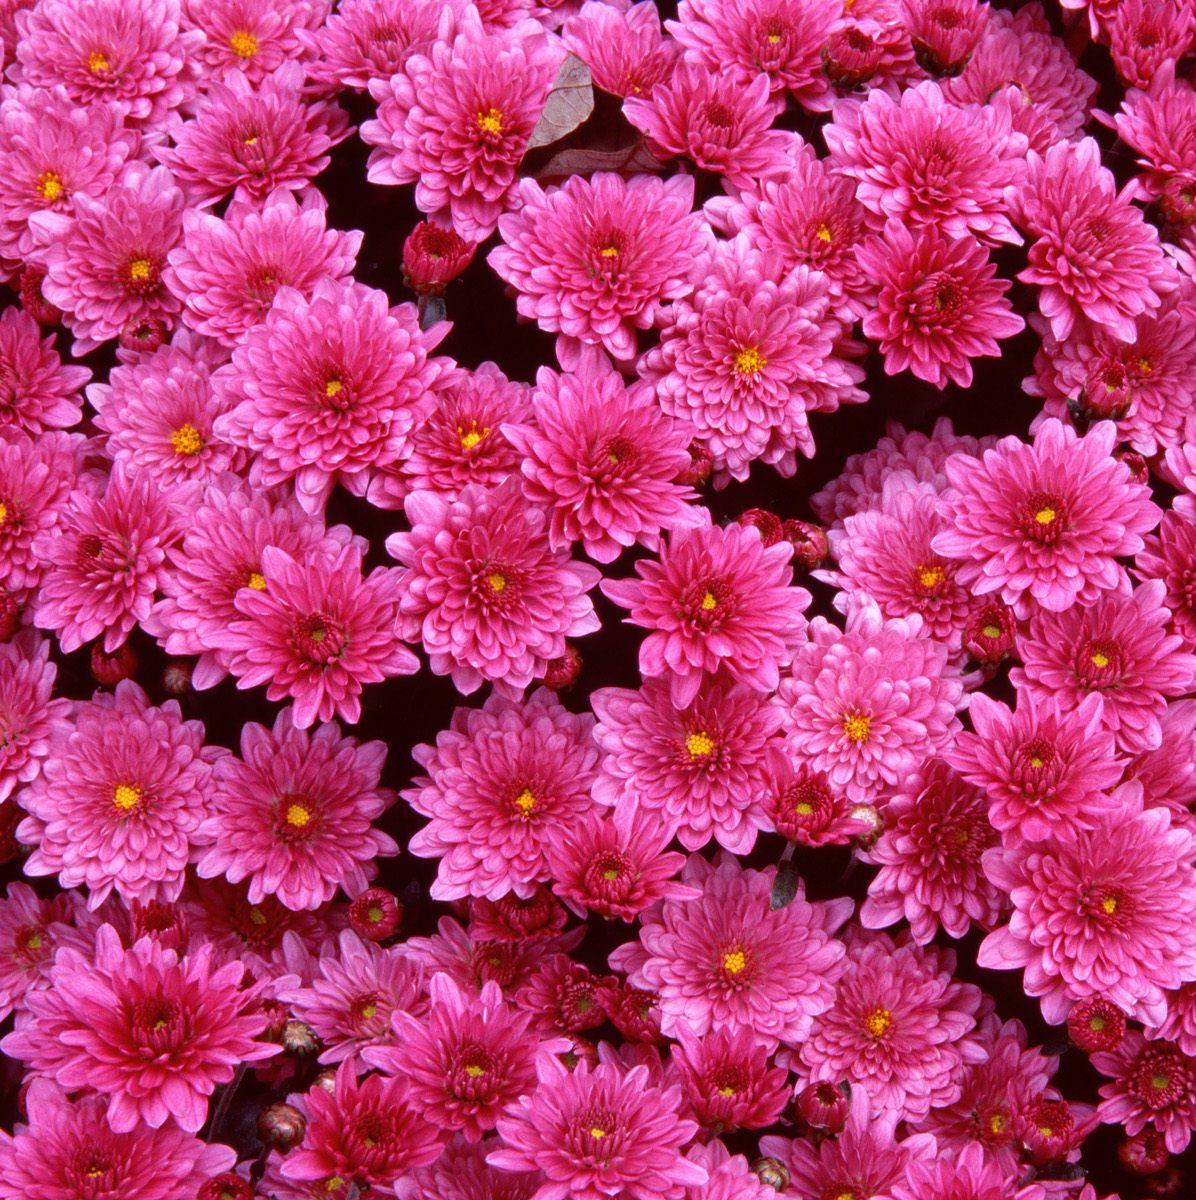 48+] Beautiful Flowers Wallpapers Free Download - WallpaperSafari